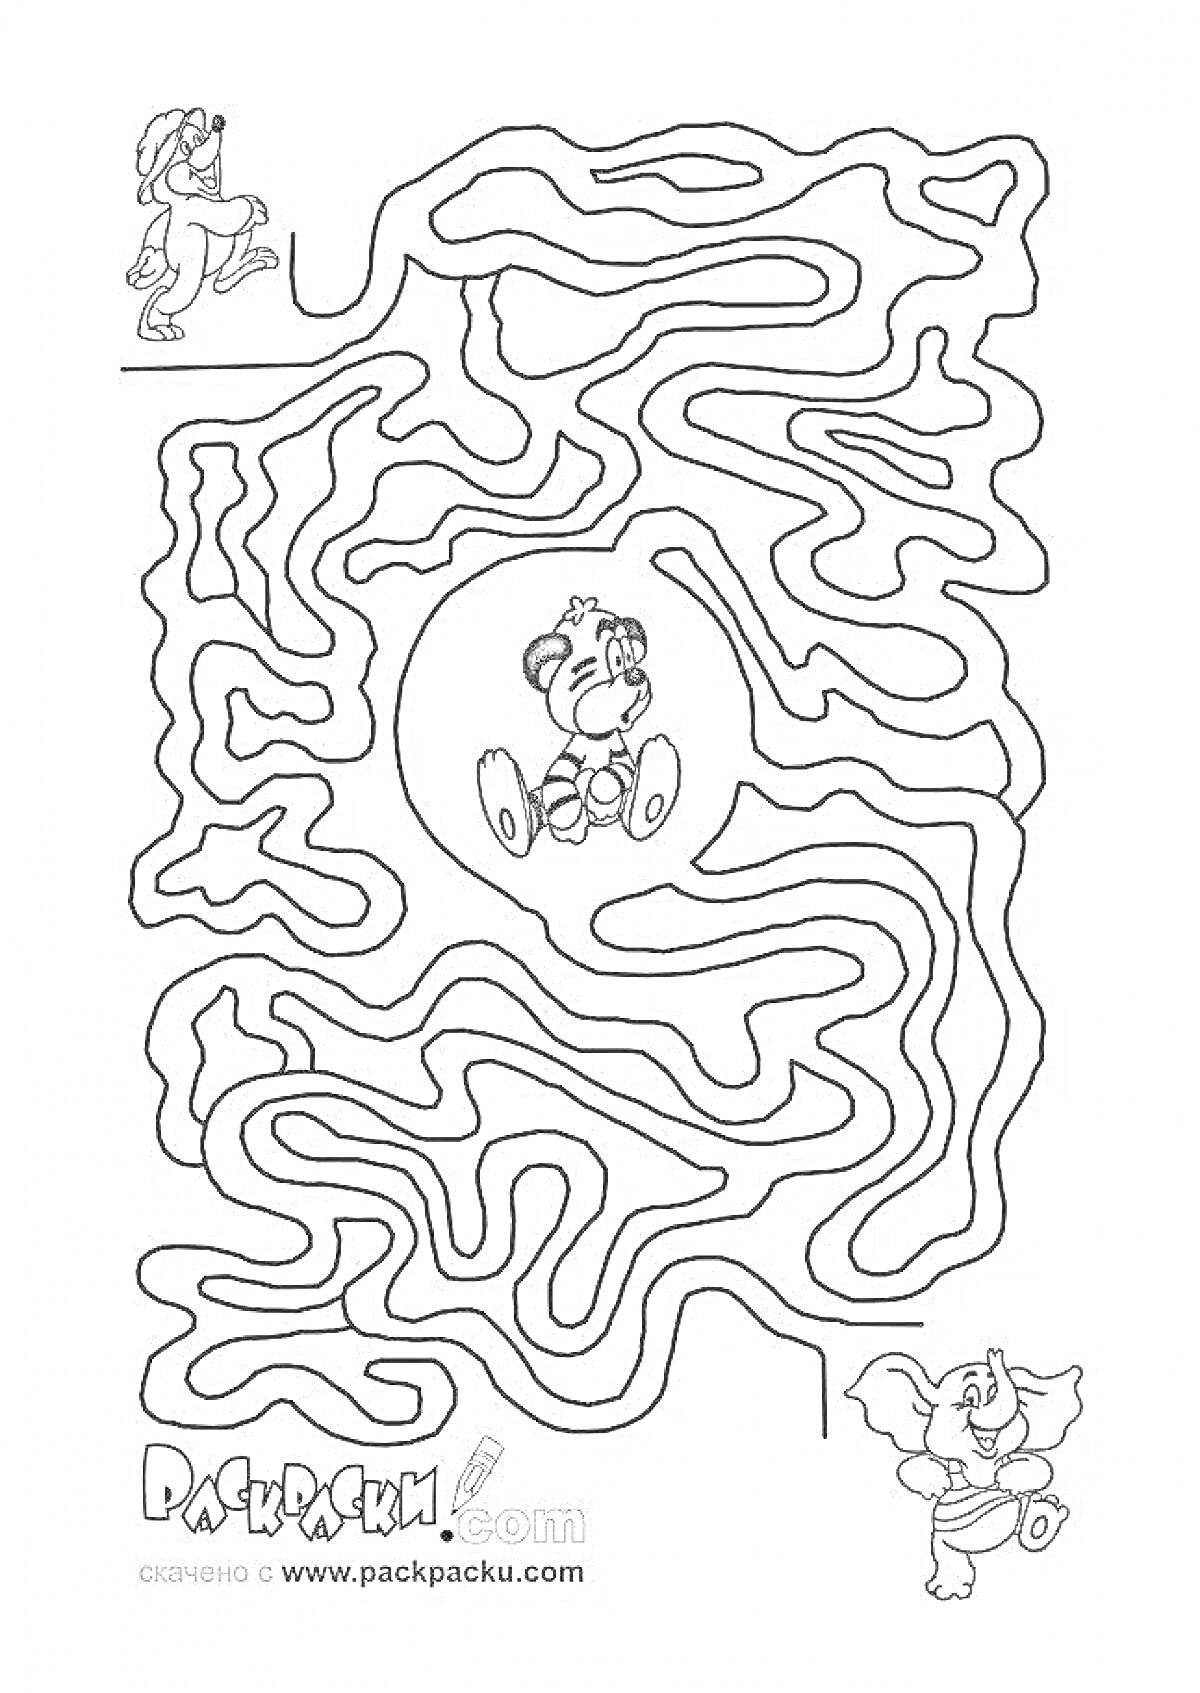 Раскраска Лабиринт с медвежонком на троне и бегущими слоном и мышью